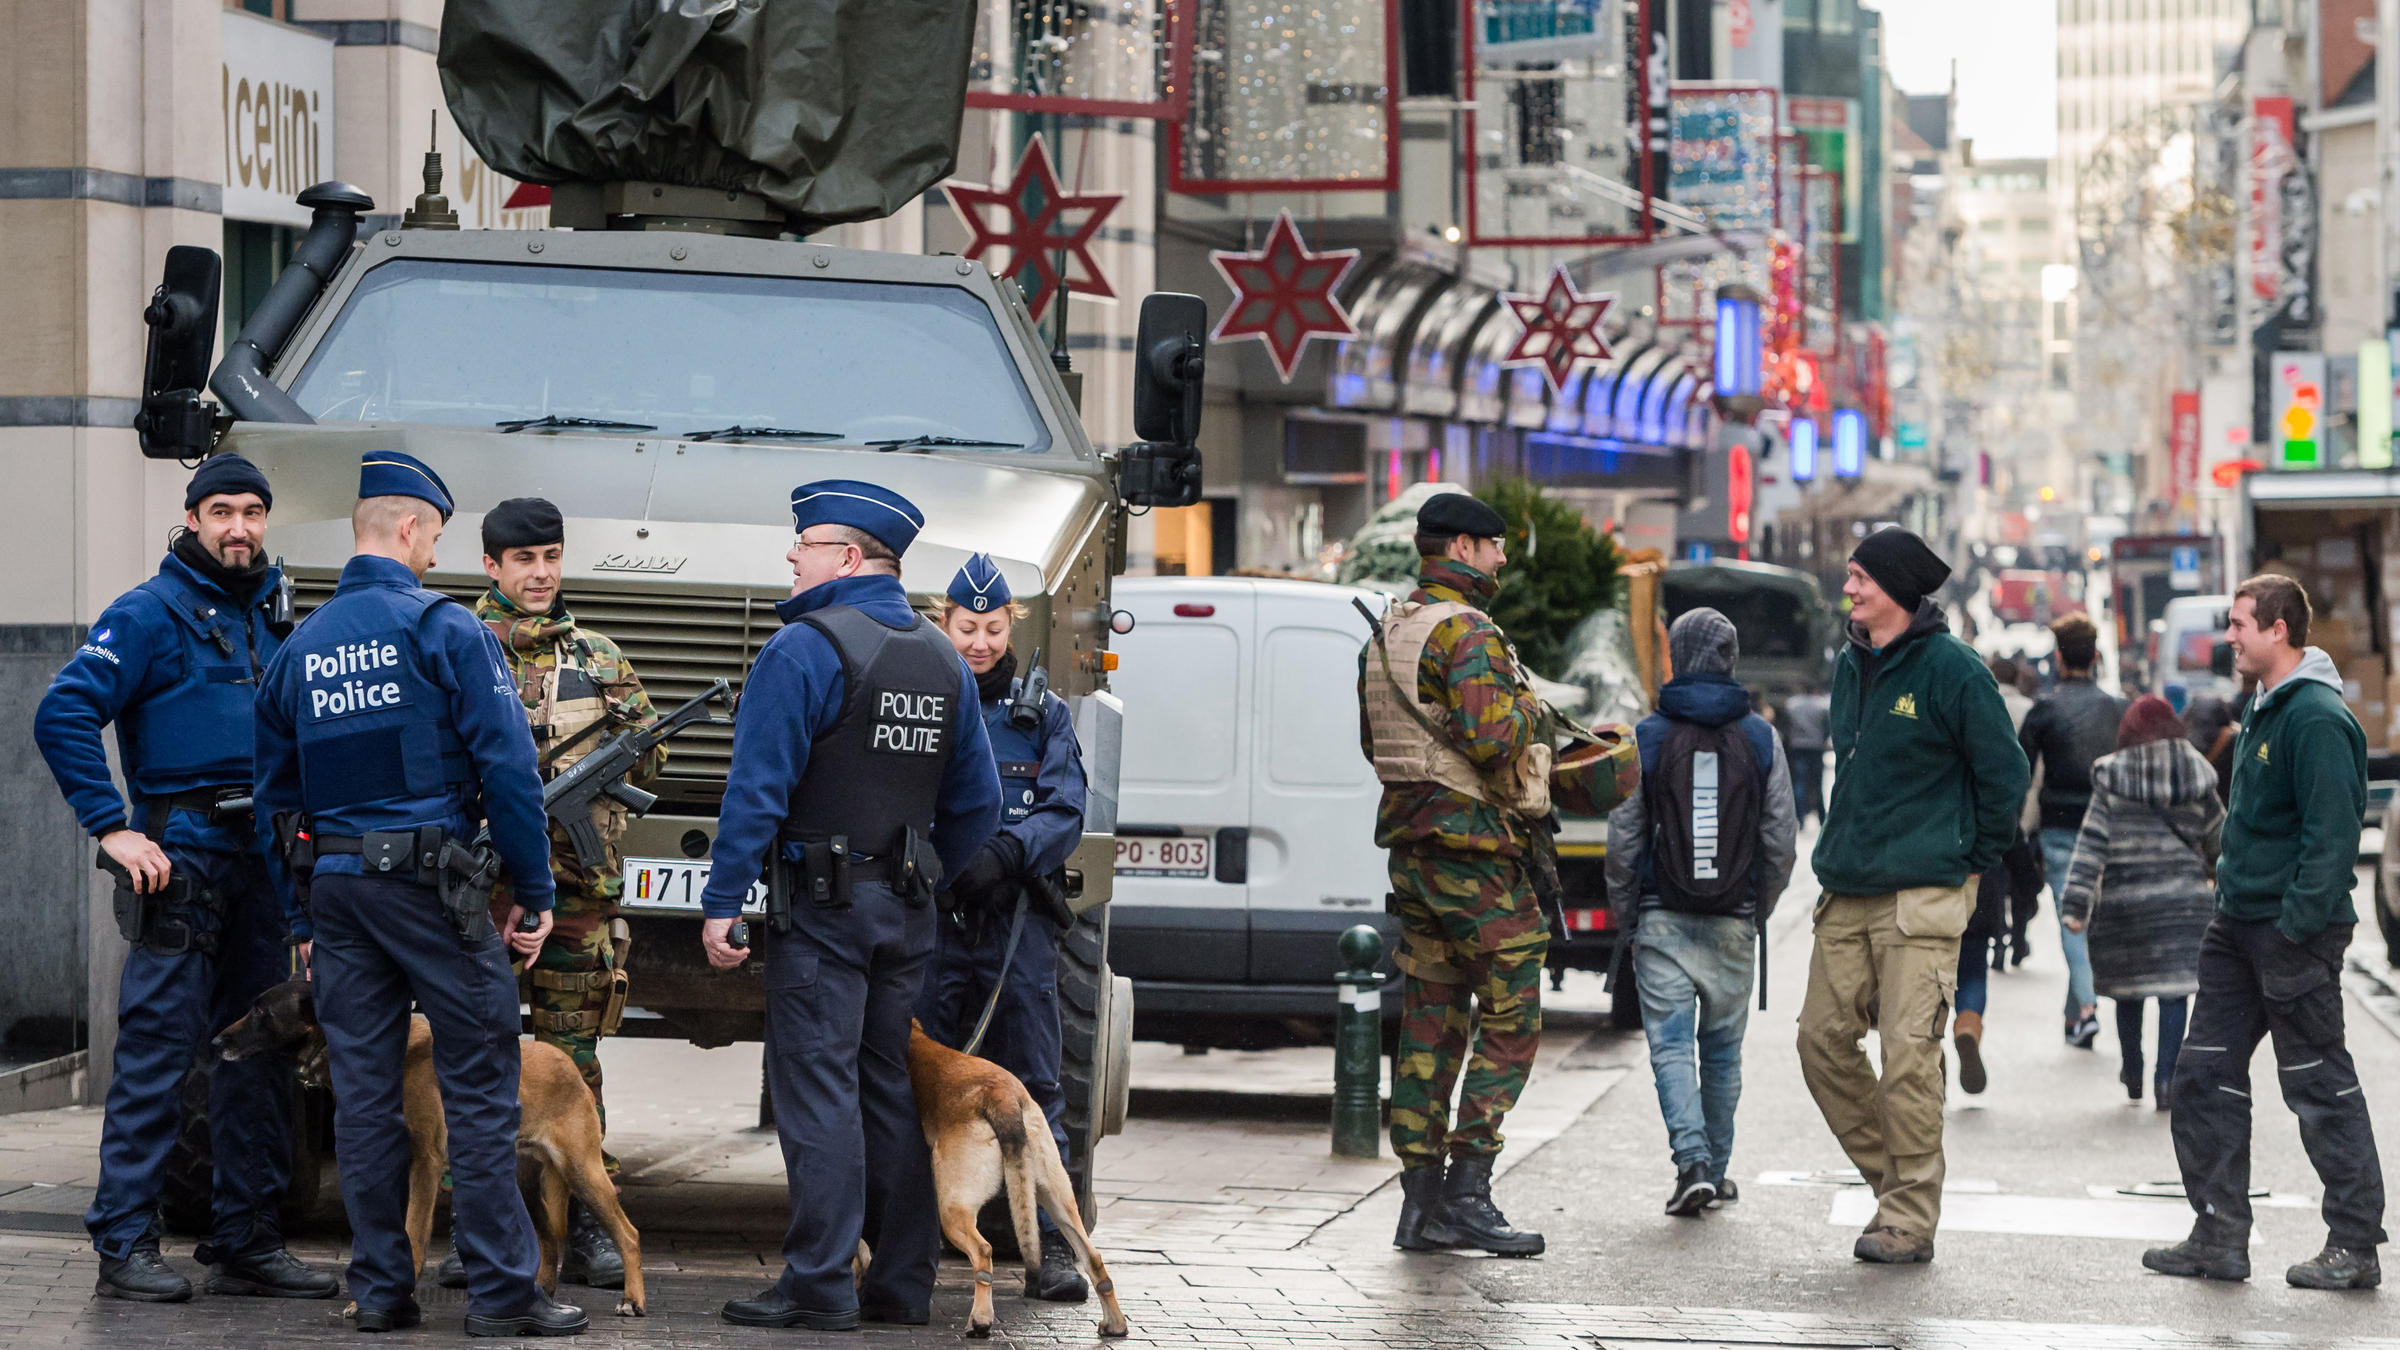 Βρυξέλλες: Εντοπίστηκαν αστυνομικές στολές και καλάσνικοφ – Πιθανό τρομοκρατικό χτύπημα